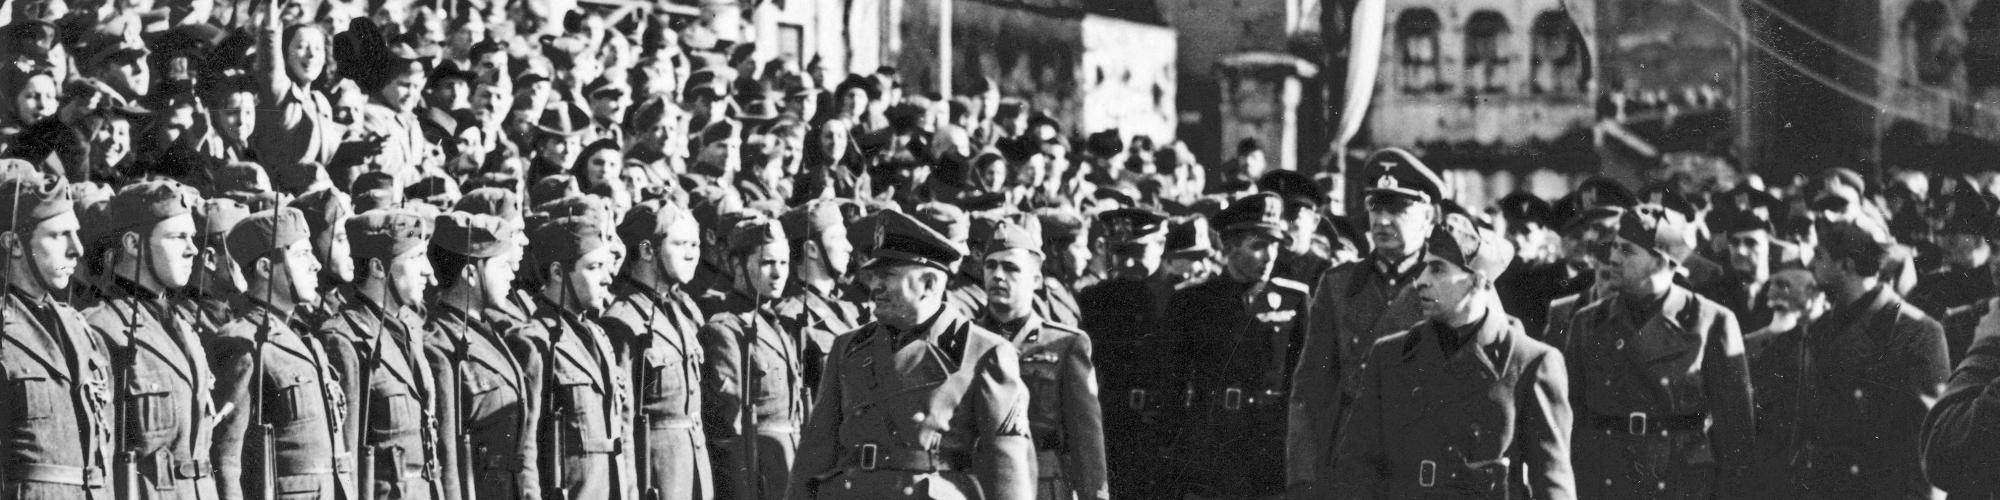 Photo n°158641, 19ème anniversaire de la fondation de la milice fasciste, 1942 coll. Sipho, Droits réservés.